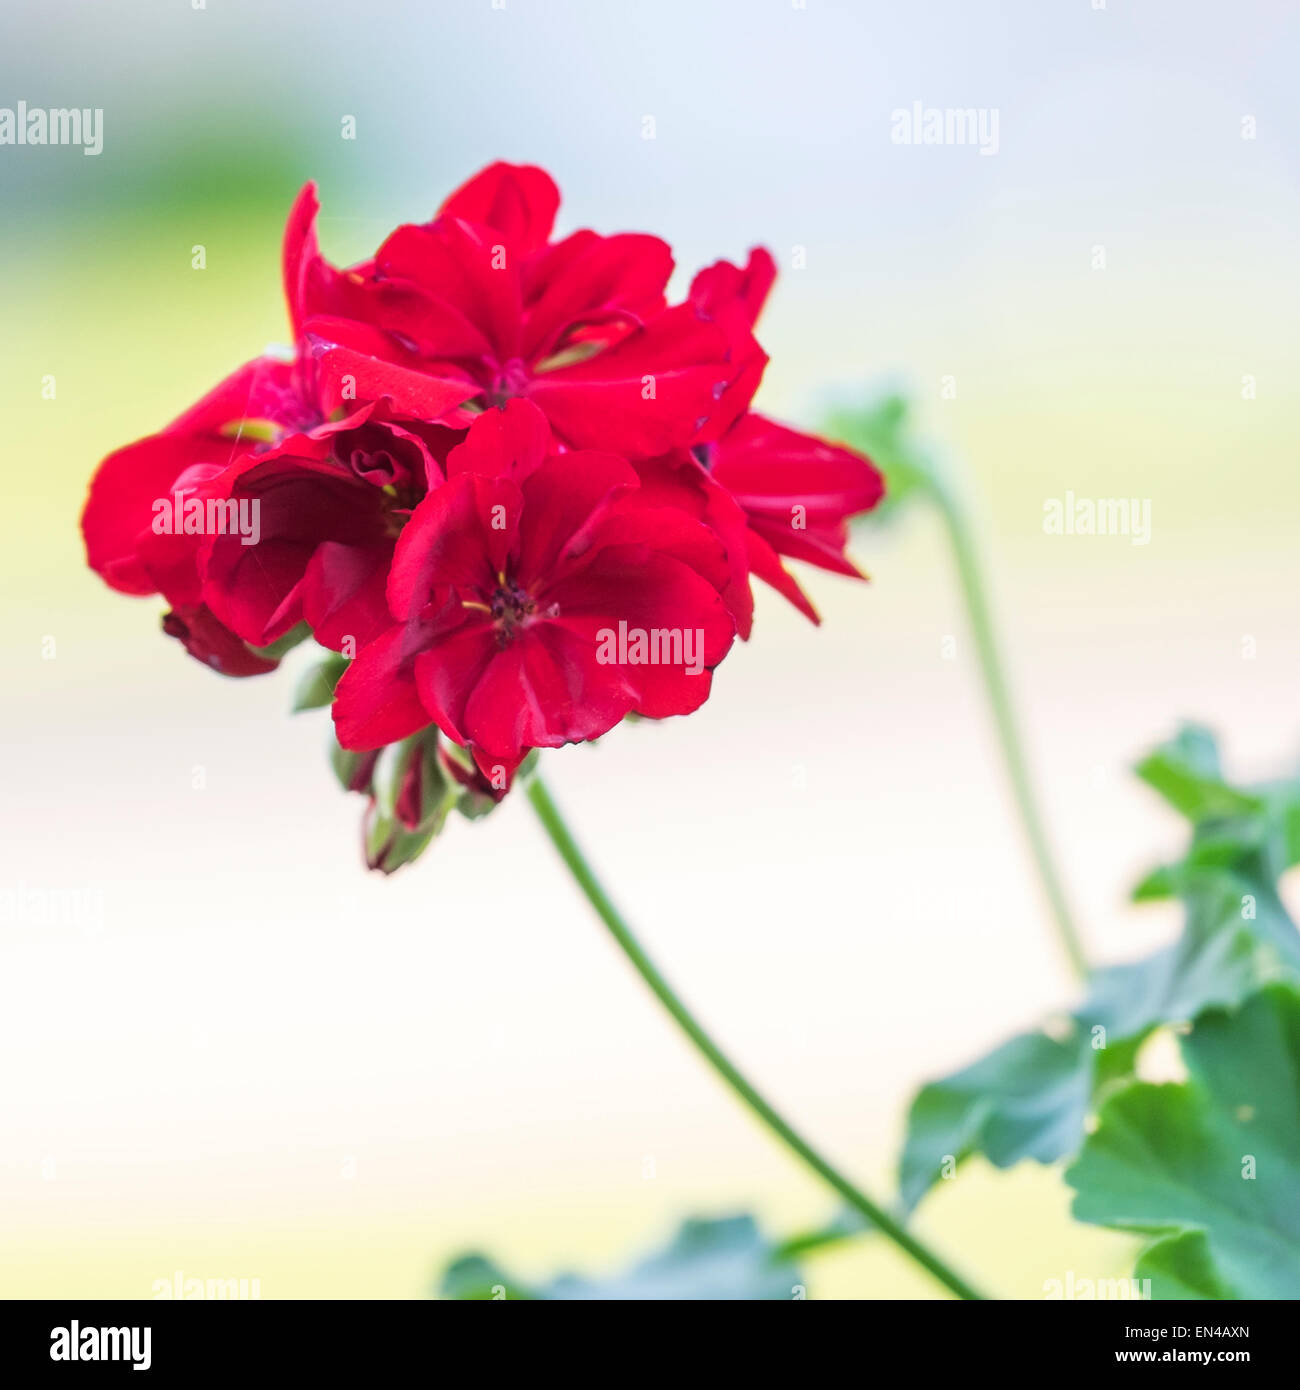 A red geranium blossom closeup, with outdoor defocused background. USA. Stock Photo